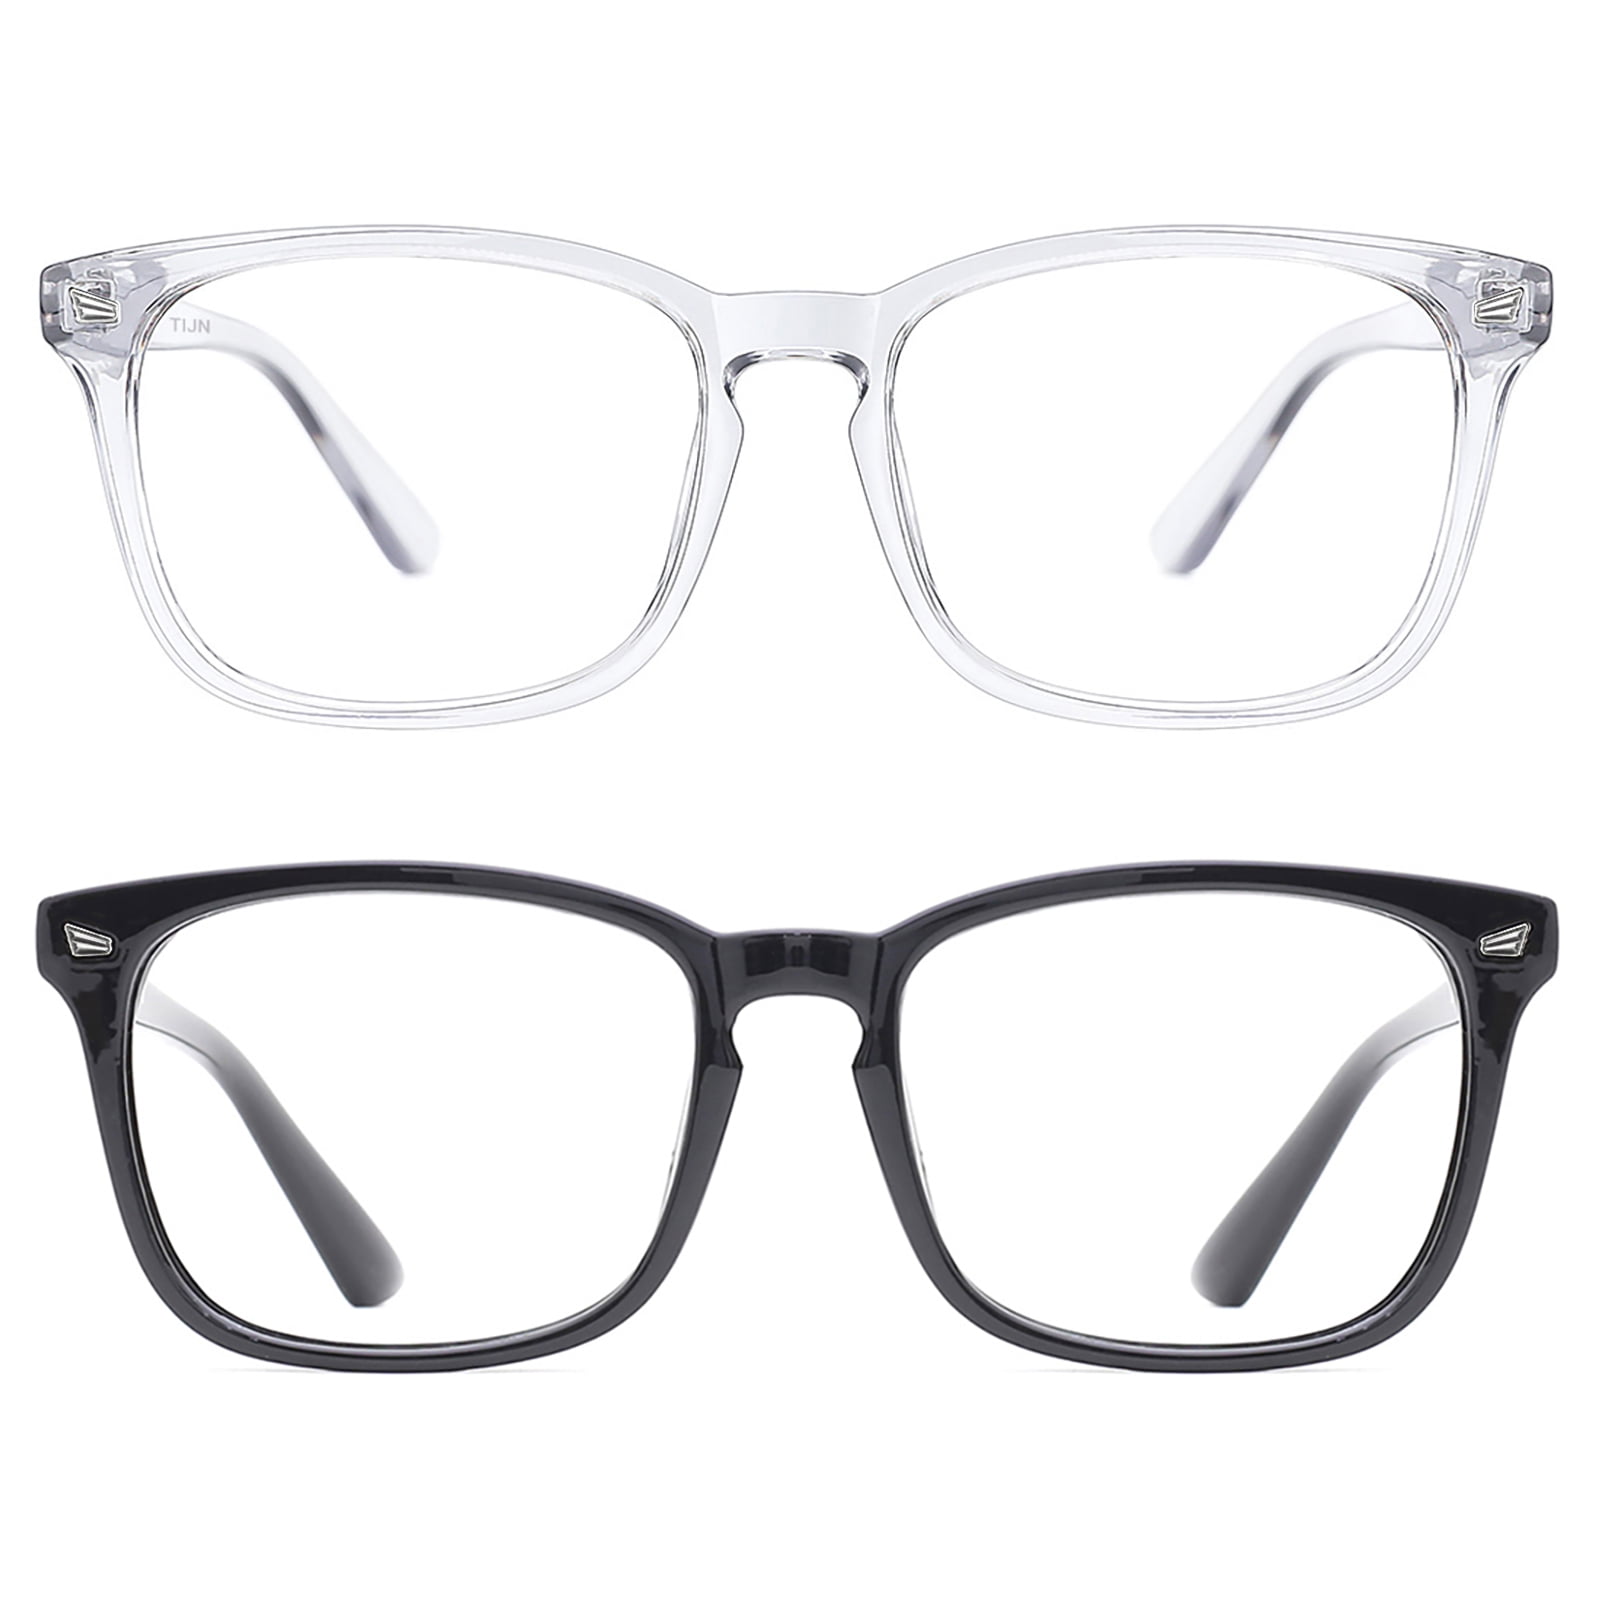 TIJN Blue Light Blocking Eyeglasses Nerd Glasses Anti Eyestrain Sleep Better 